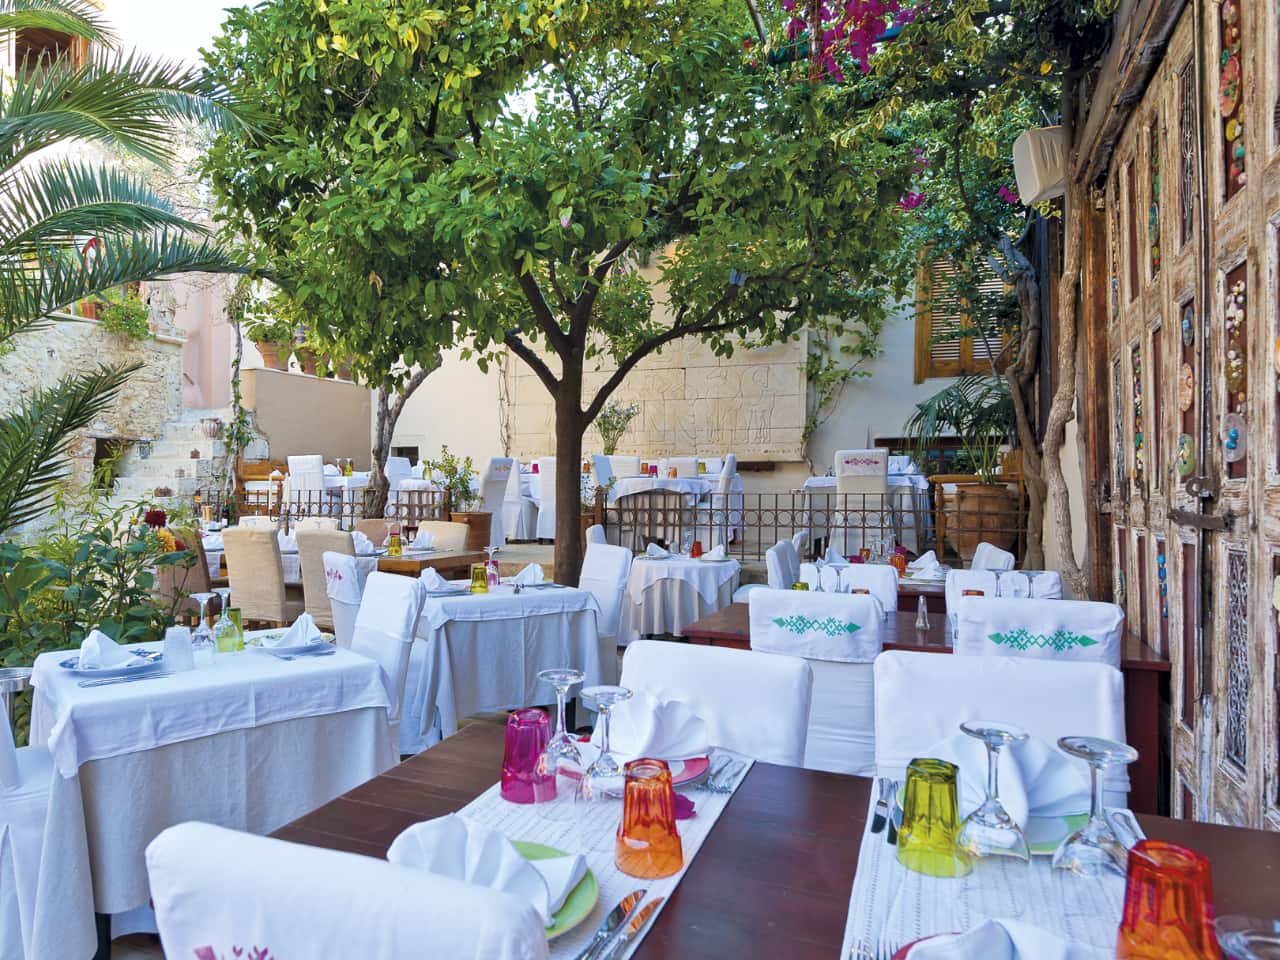 avli restaurant rethimno, avli restaurant rethymno crete, rethimno where to eat, gastronomy rethimno crete, best restaurant rethymno town